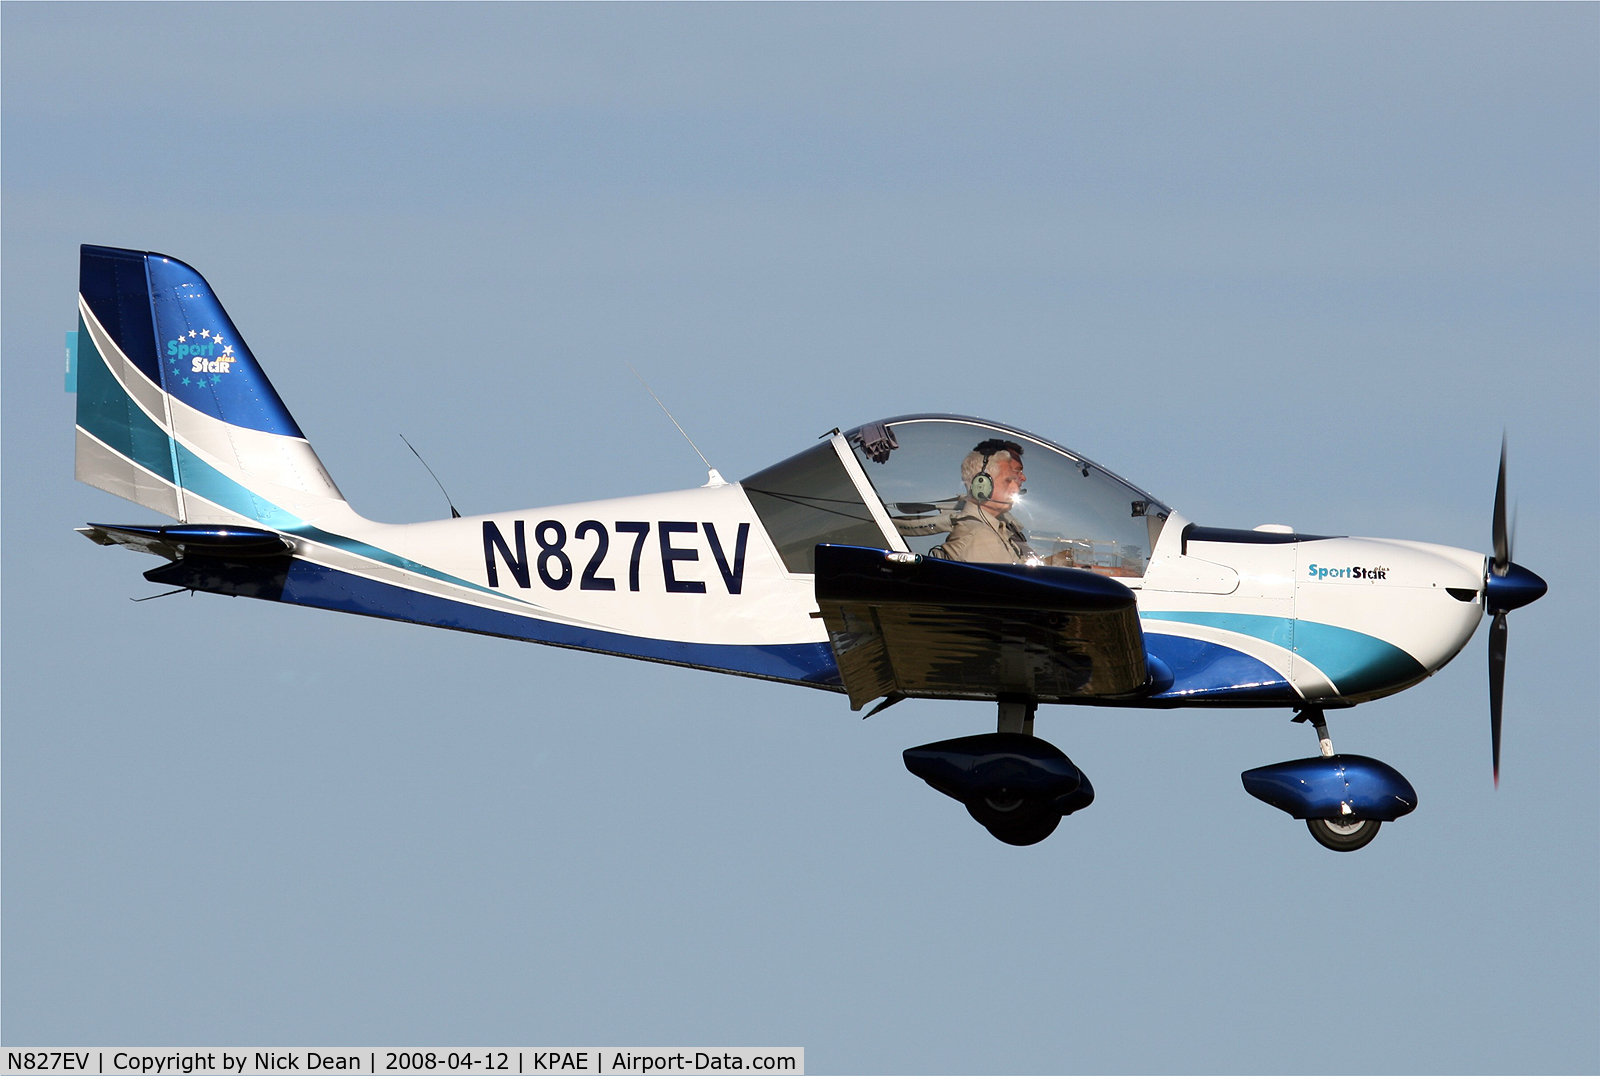 N827EV, 2007 Evektor-Aerotechnik Sportstar C/N 20070827, KPAE